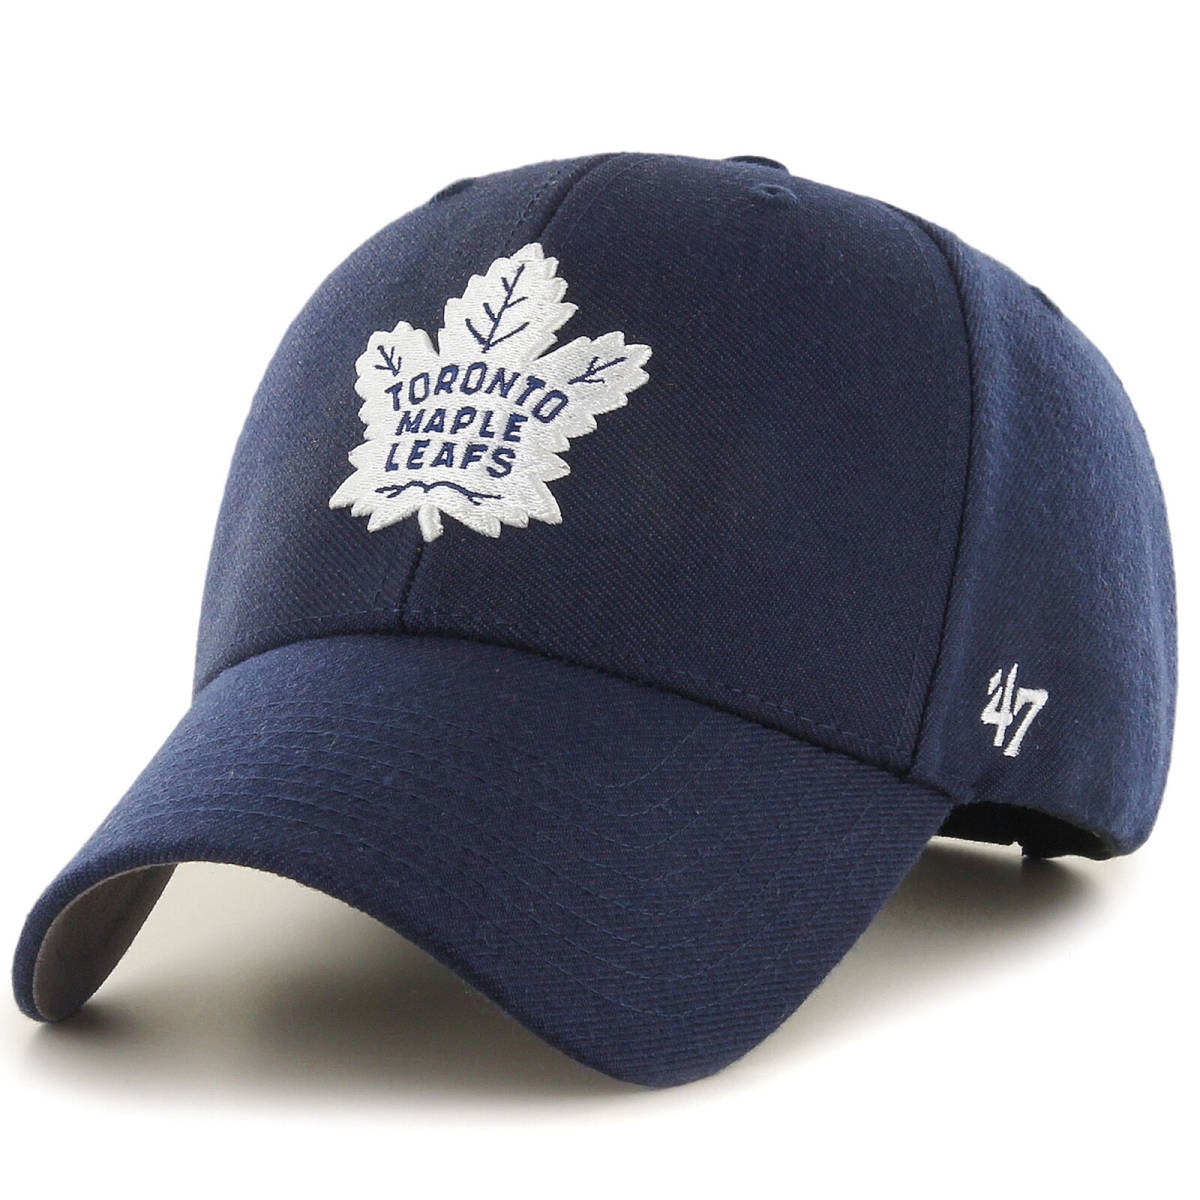 送料無料 NHL Toronto Maple Leafs 47 MVP トロント メープルリーフス ナショナルホッケー アイスホッケー キャップ 帽子 47 Brand